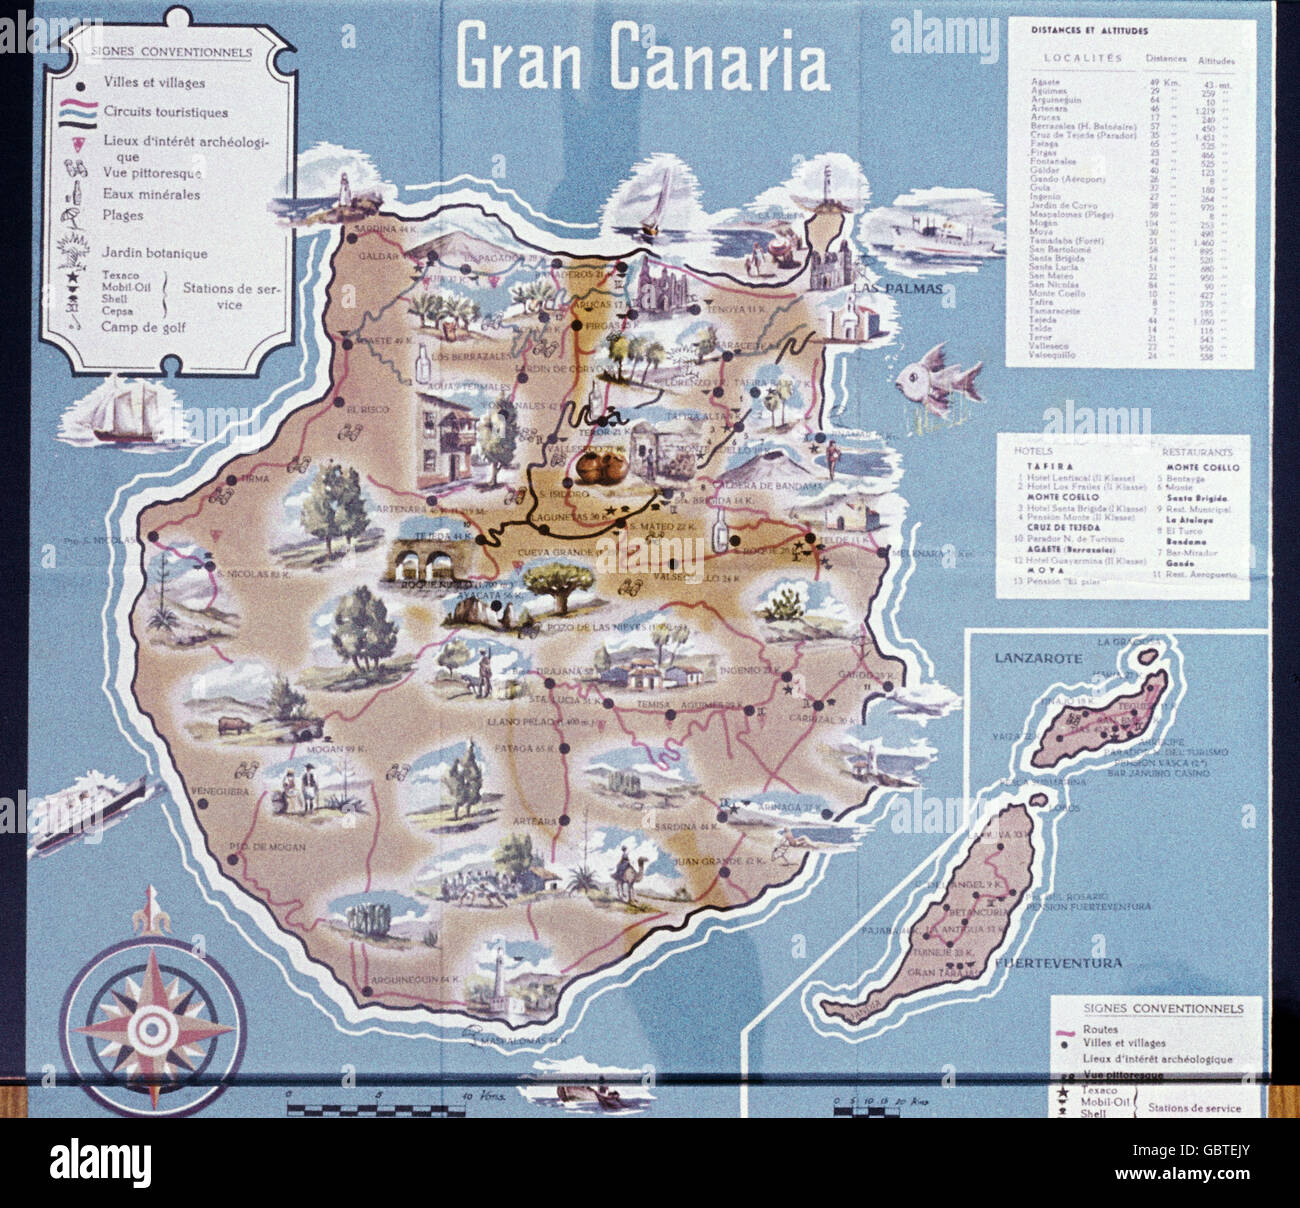 Geographie / Reisen, Spanien, Kanarische Inseln, Kanarieninseln, topographische Karte, 1958, Zusatzrechte-Clearences-not available Stockfoto